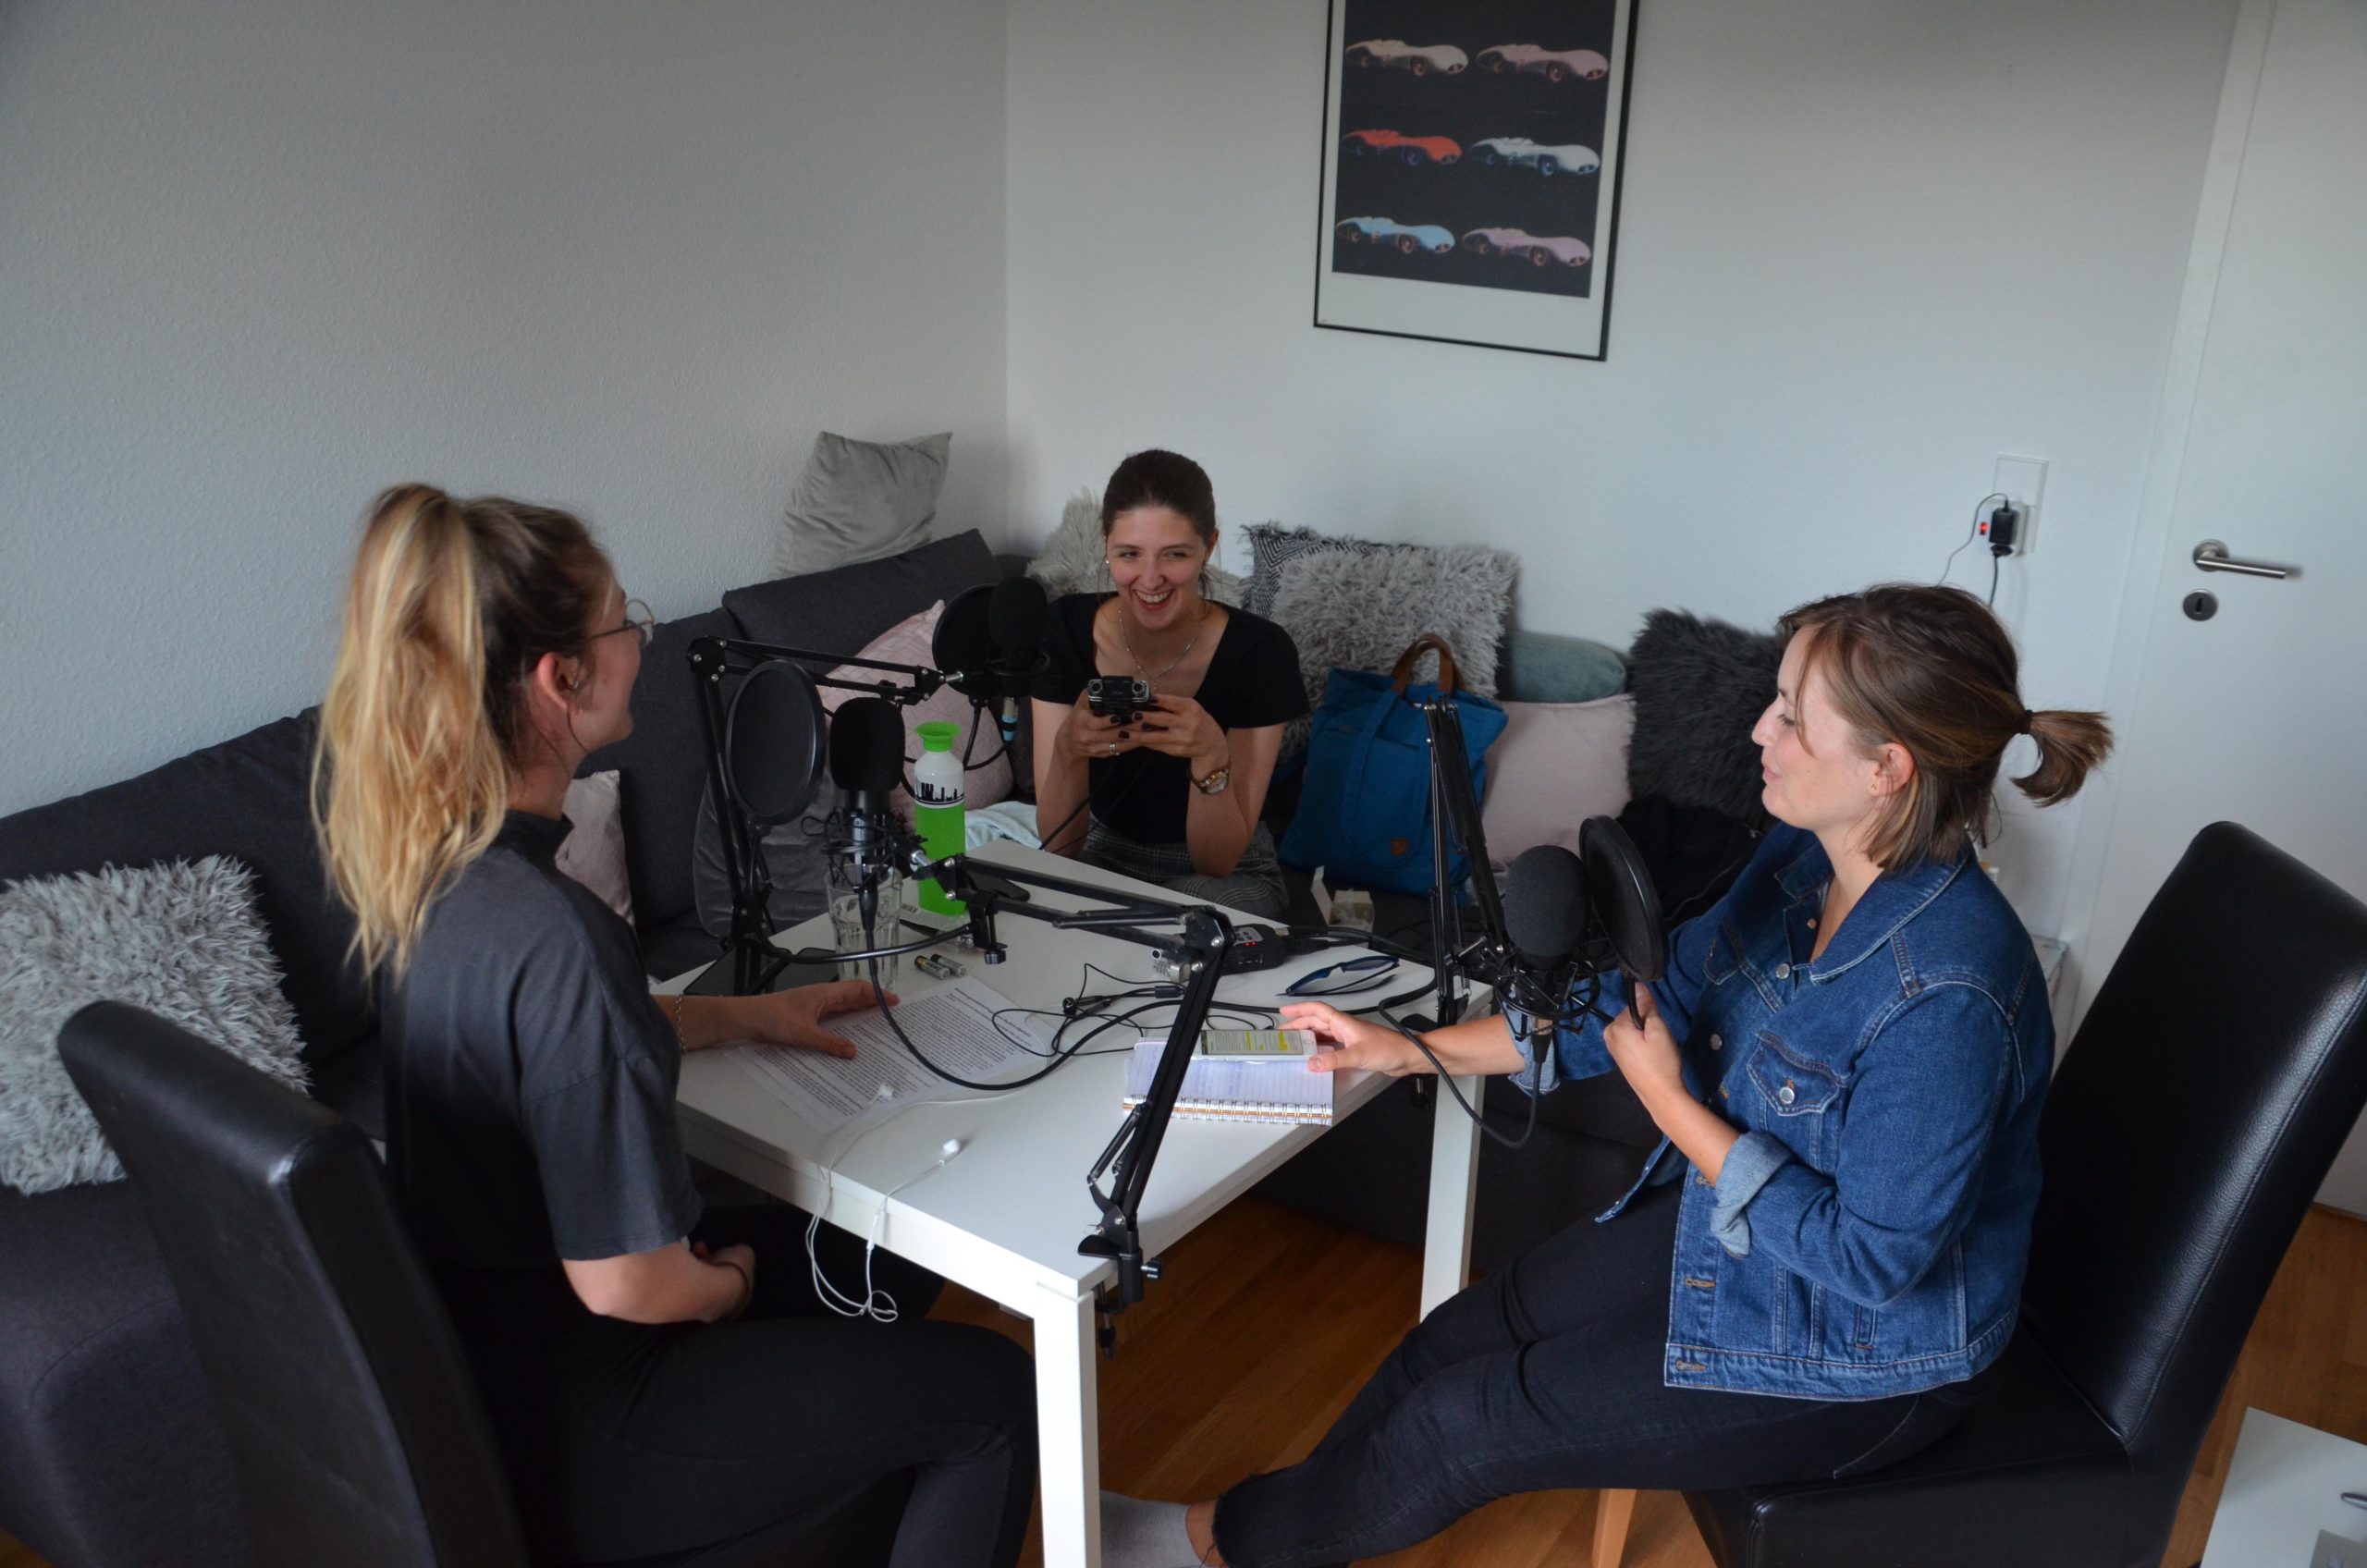 Aniko, Eva und Chiara sprechen über die Bewerbung am Podcast-Tisch